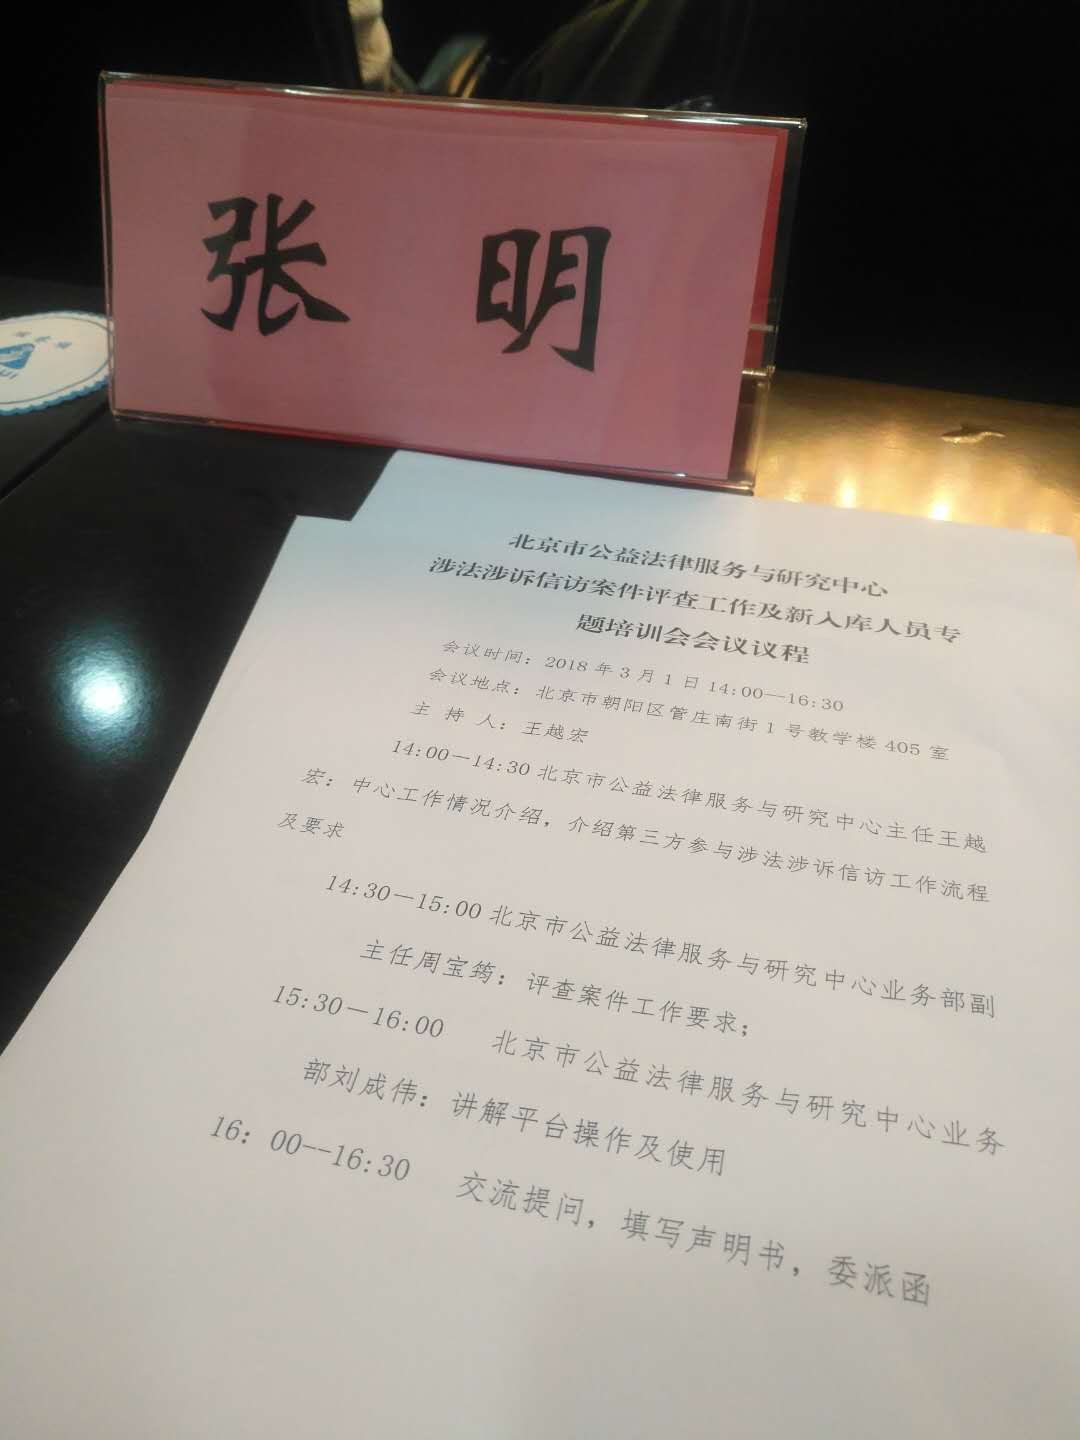 参加北京市法律服务与研究中心专题培训会